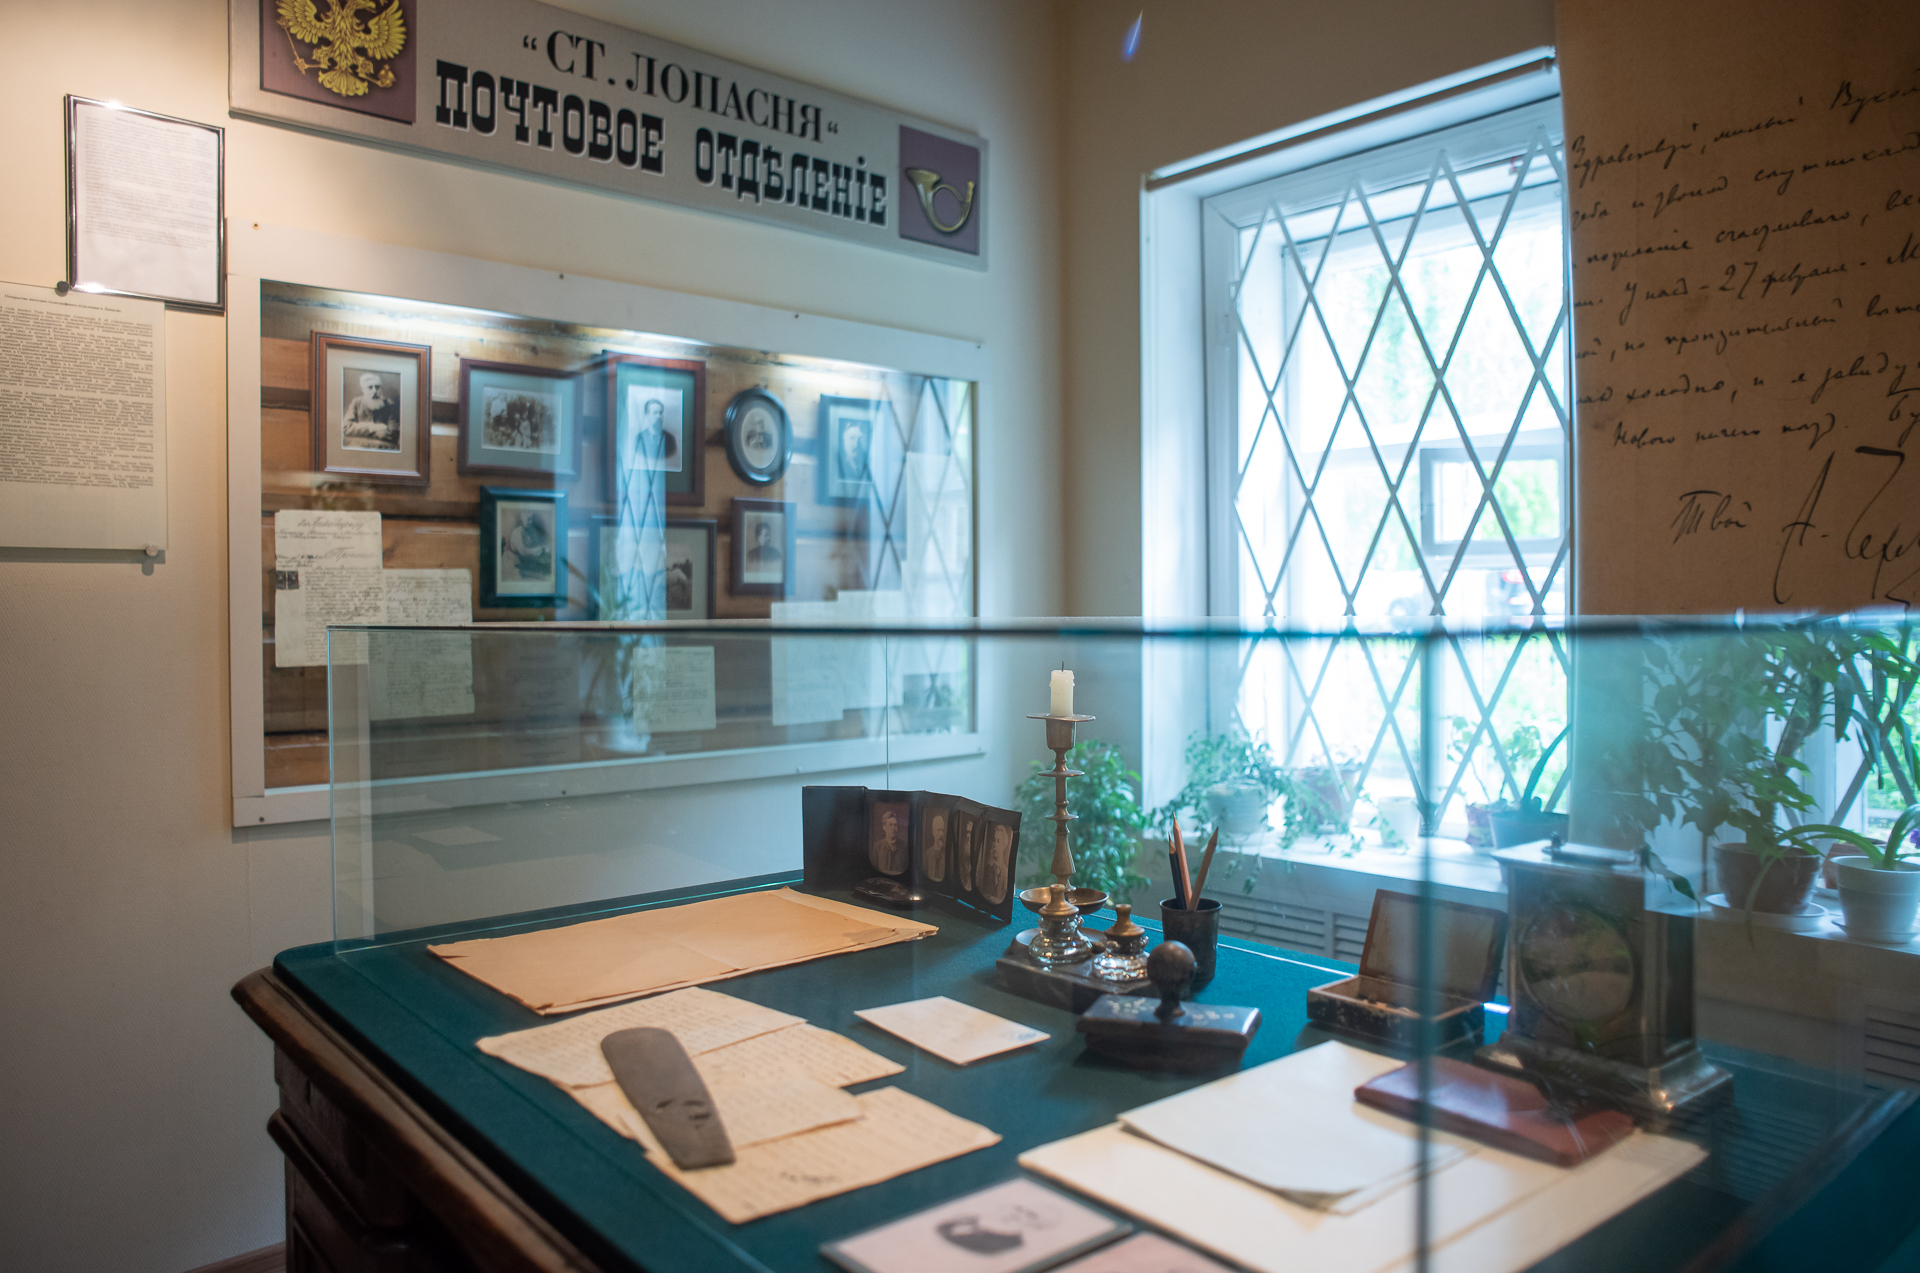 Коллекция музея познакомит вас с историей почтового дела и эпистолярным наследием писателя